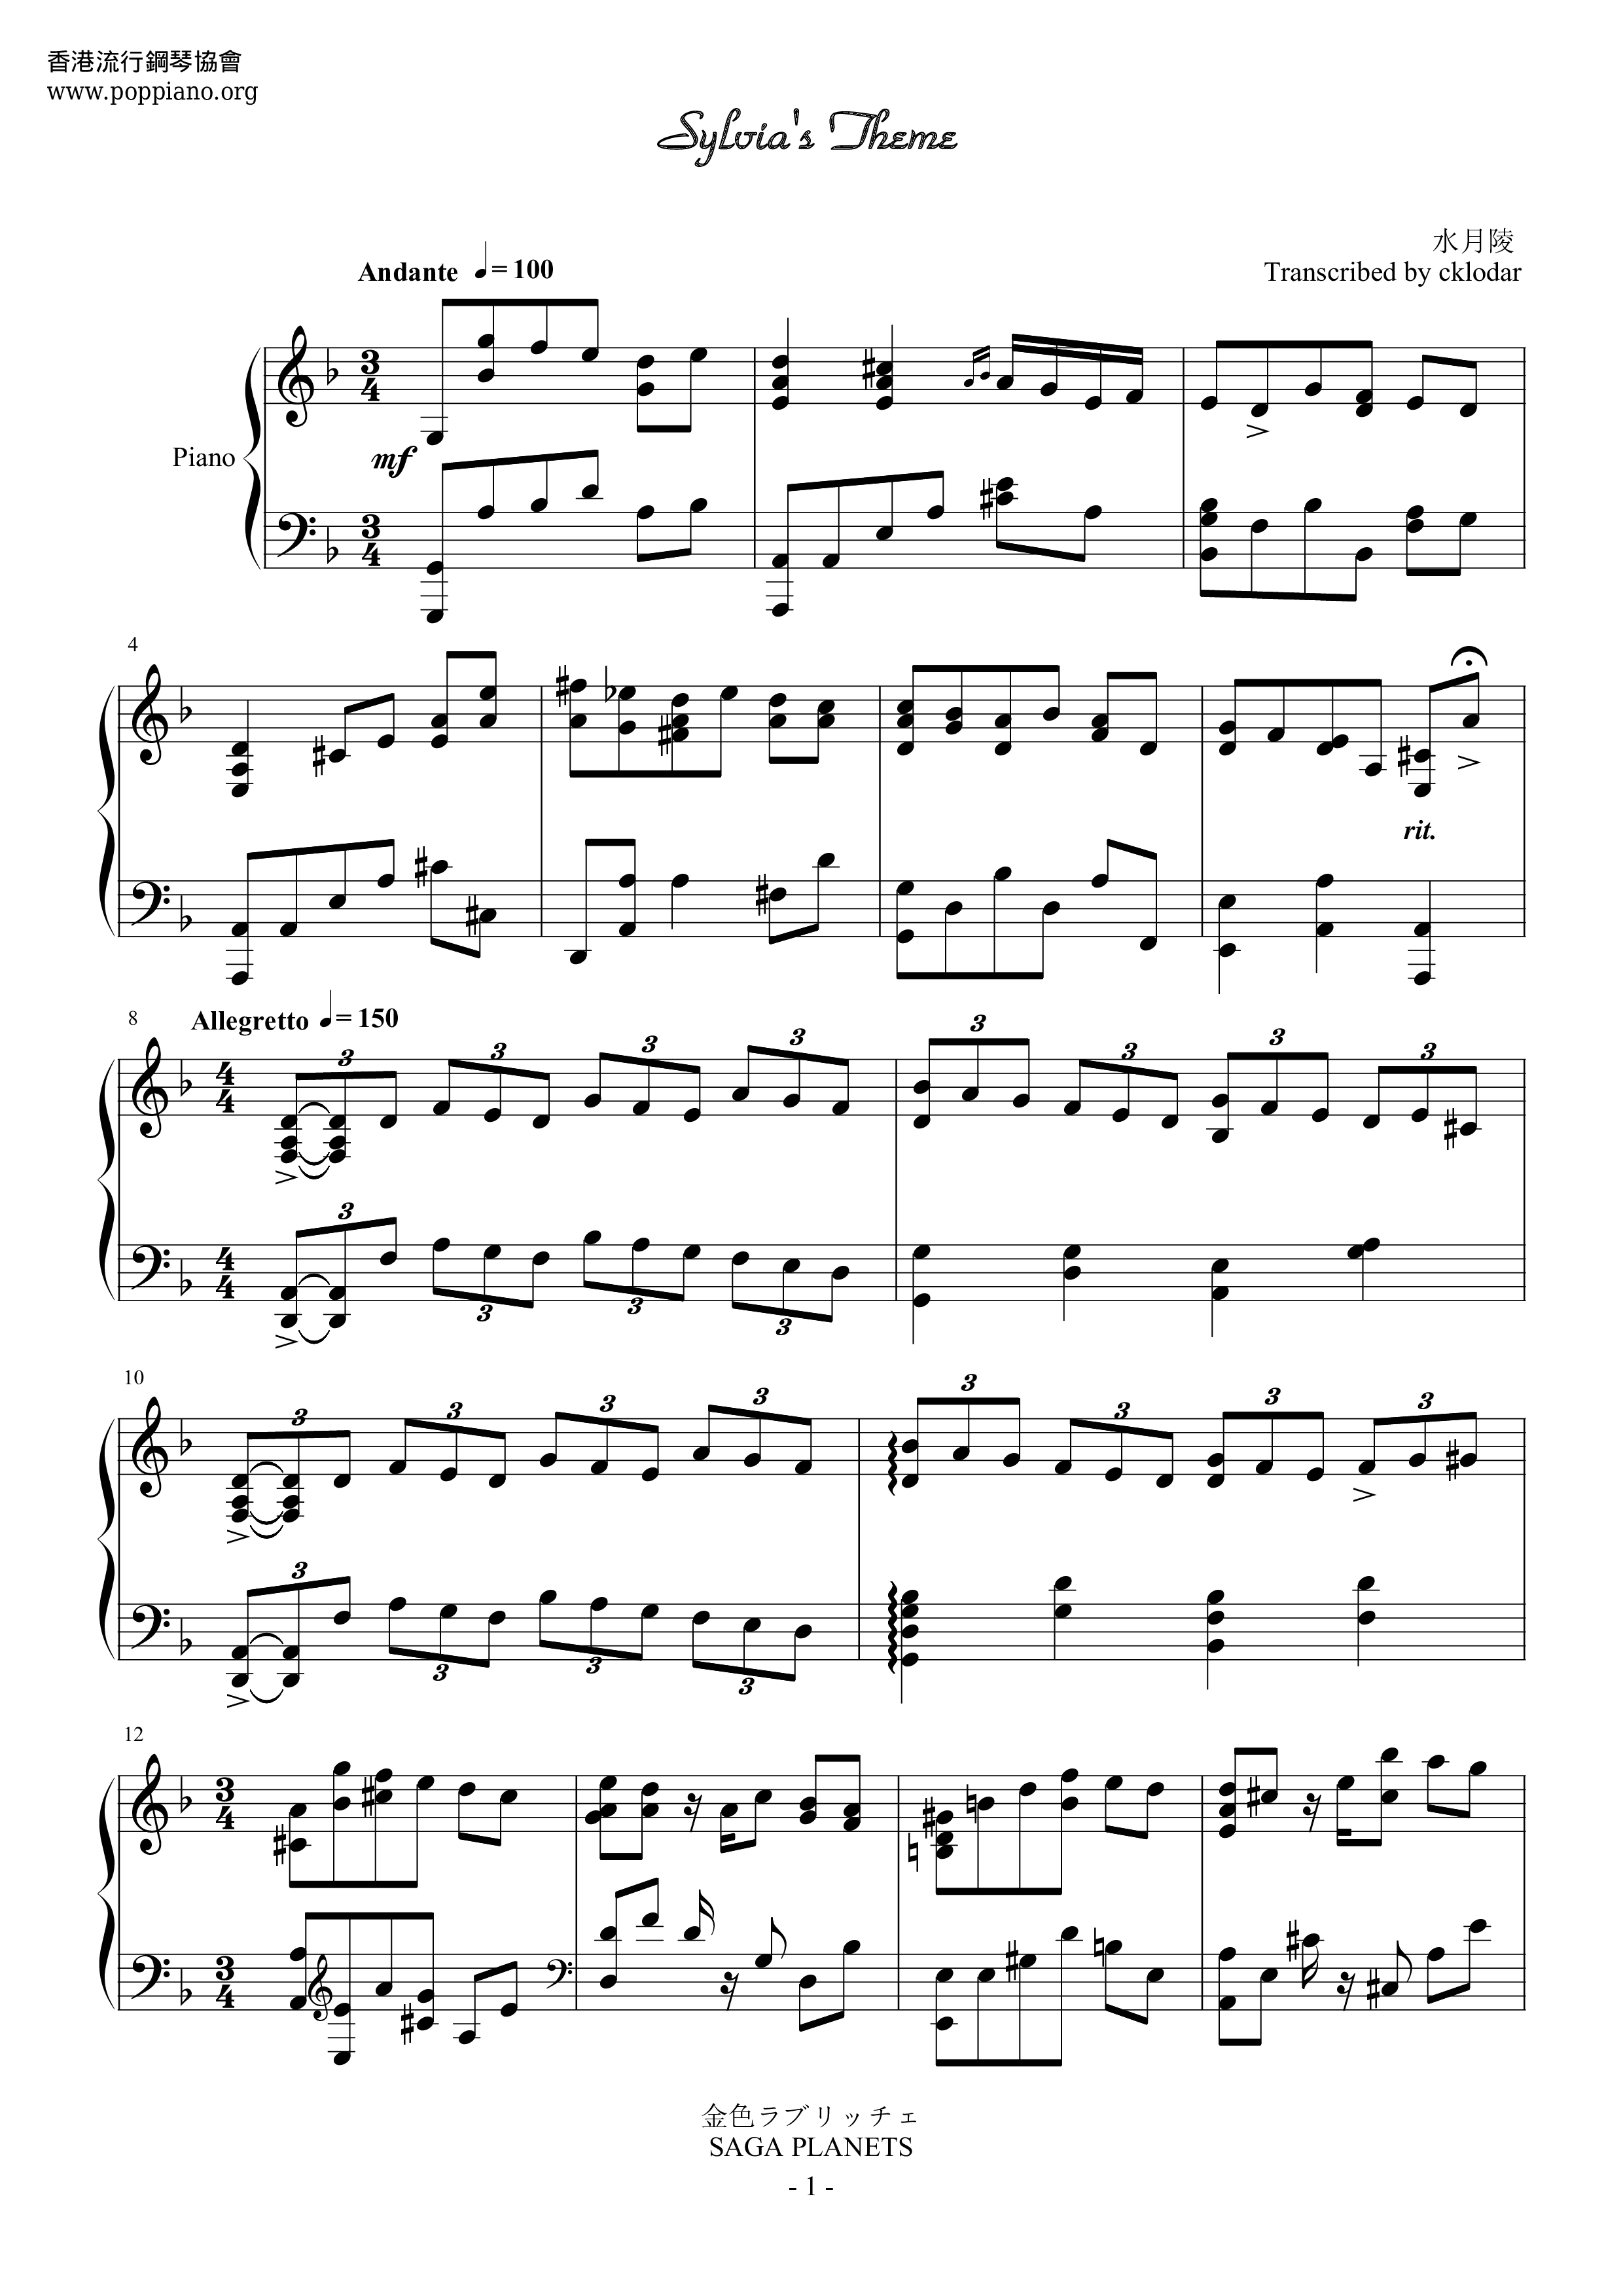 Sylvia Theme Score